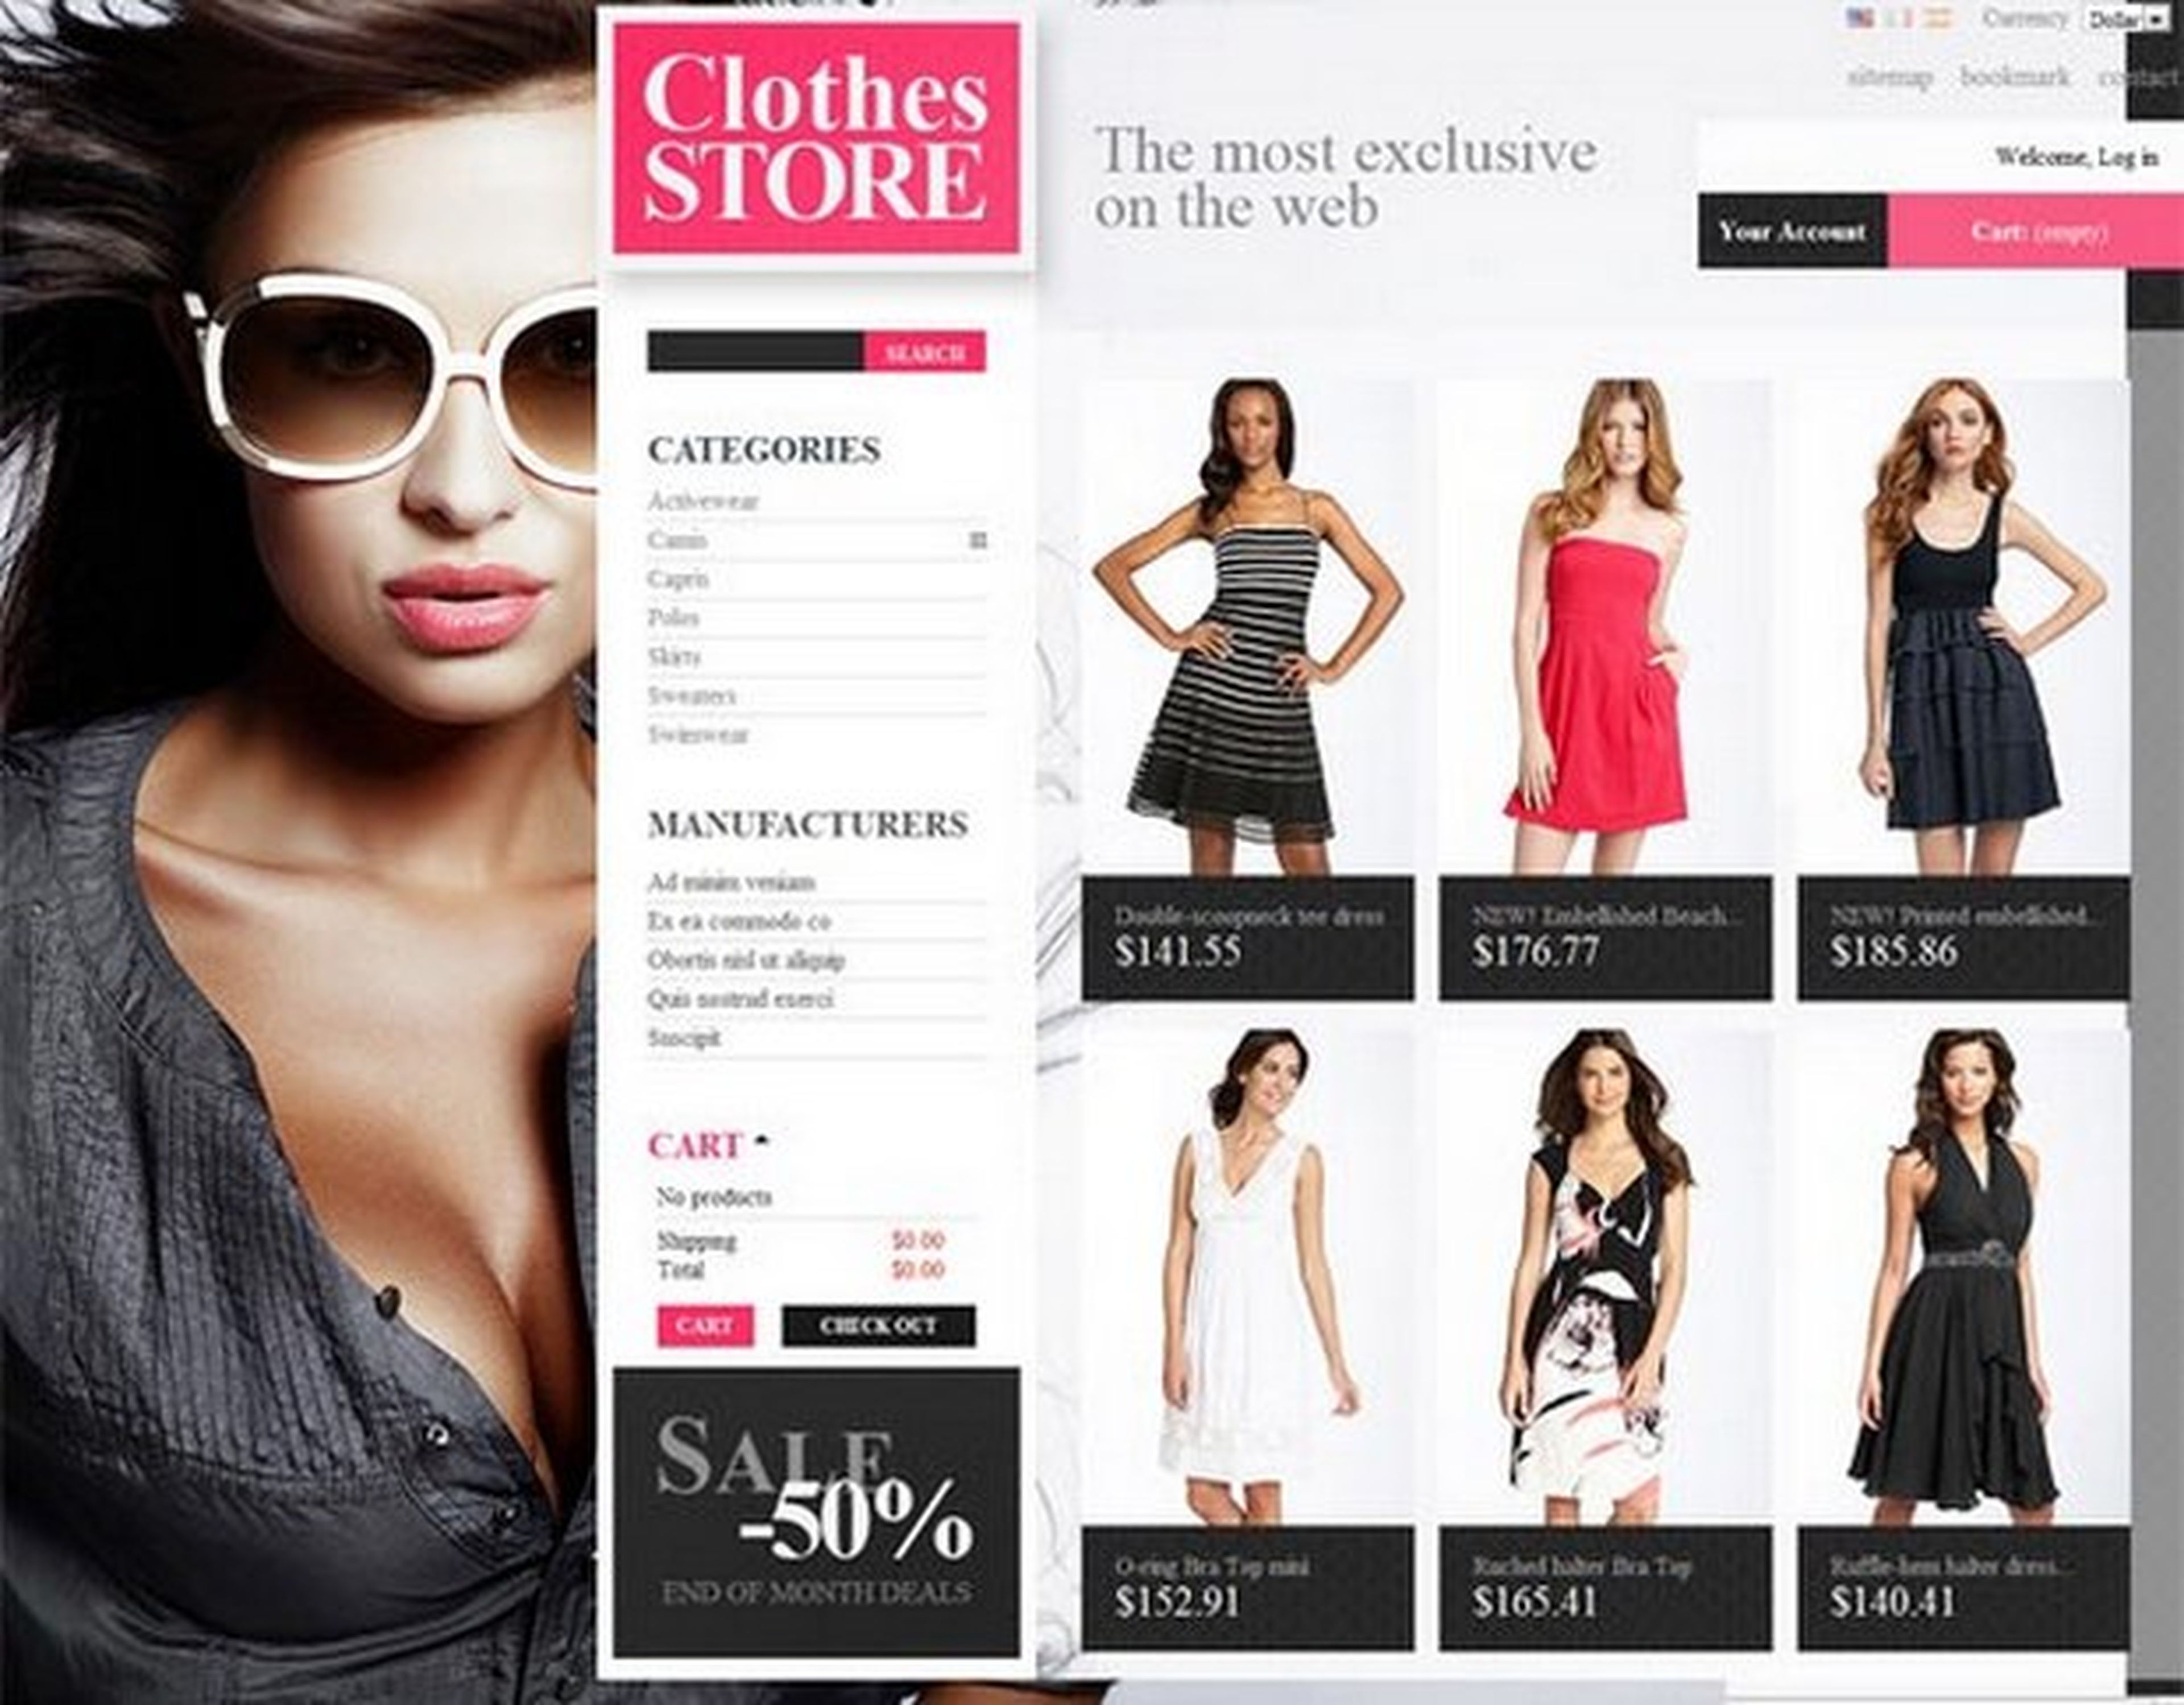 Las ventas de ropa y moda online suben en España